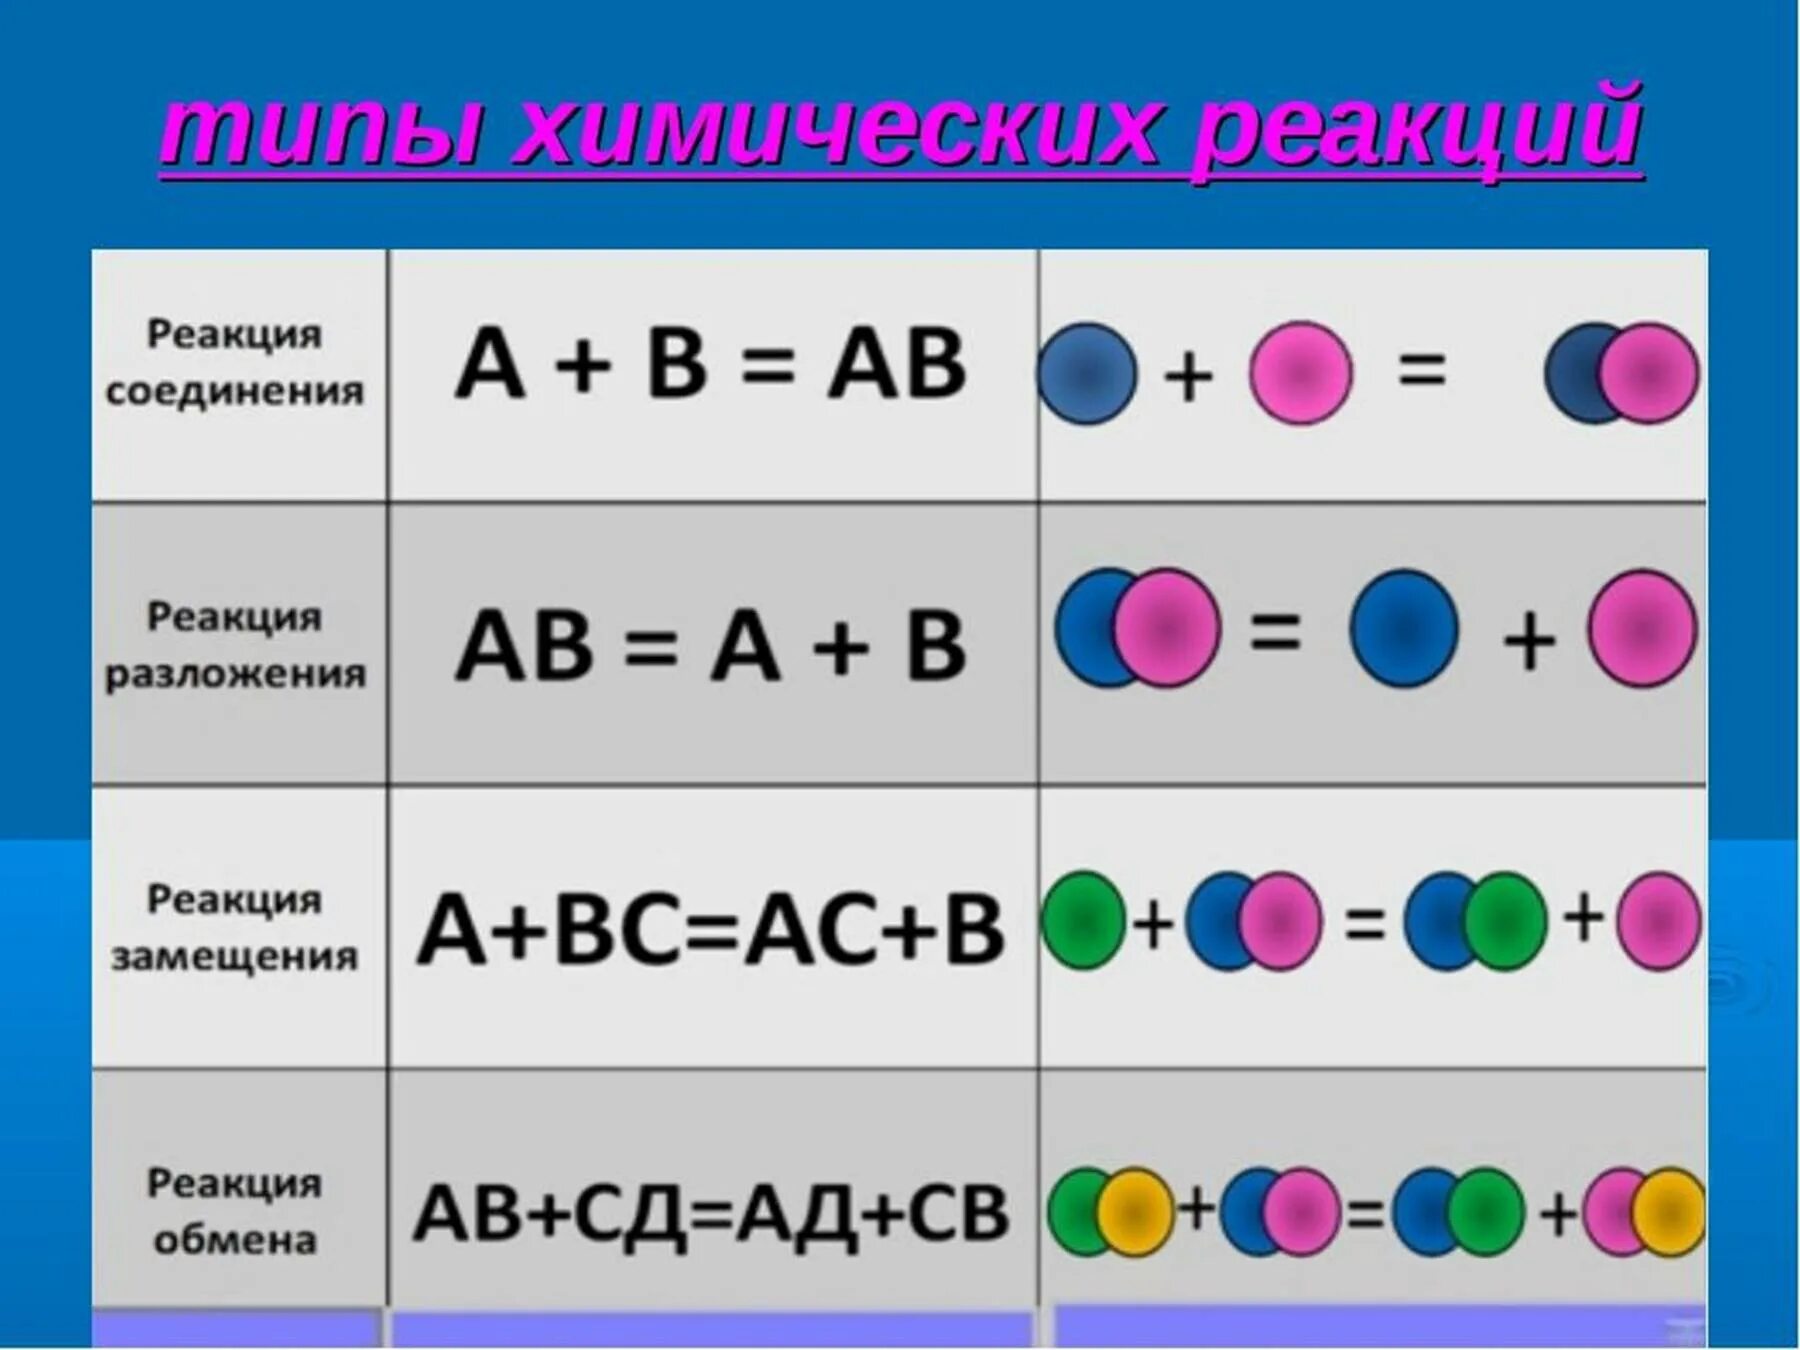 Соединения замещения обмена разложения примеры. Виды химических реакций схема. Реакция обмена соединения разложения замещения 8. Типы химических реакций 8 класс химия схема. Типы реакций в химии.